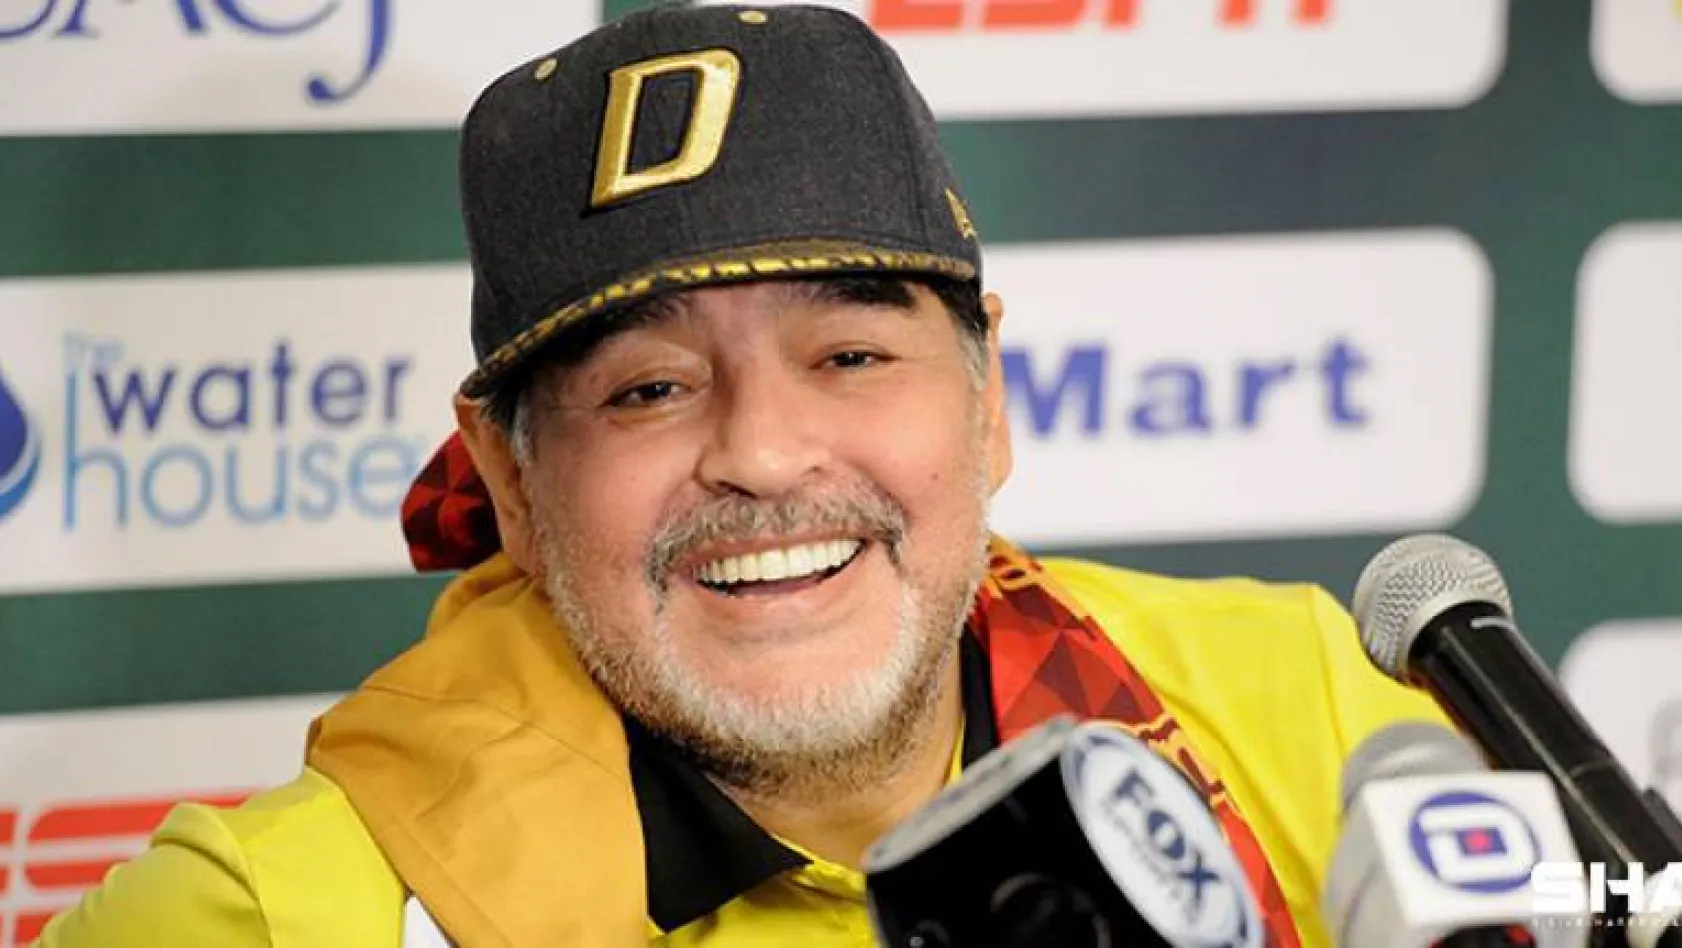 Şampiyonlar Ligi'nde Maradona için saygı duruşu yapılacak